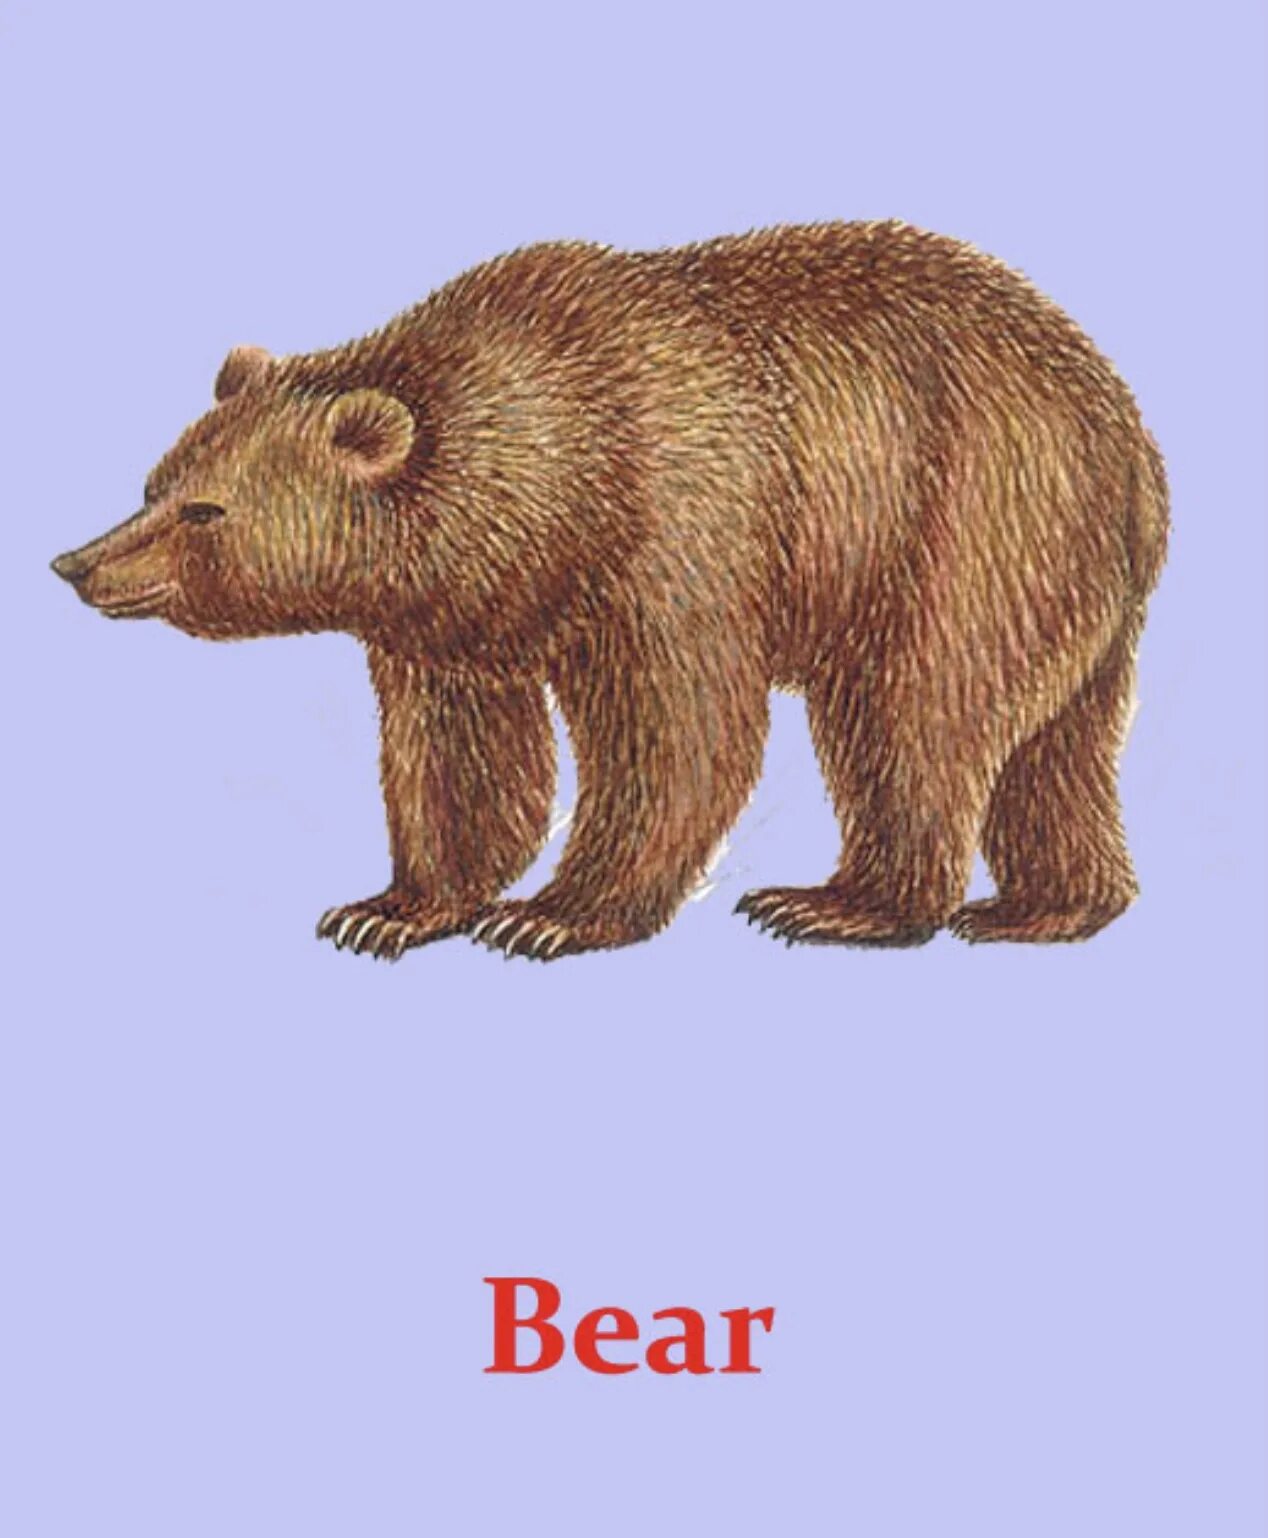 Дикие животные. Дикие животные картинки для детей. Медведь карточка для детей. Дикие животные карточки для детей.